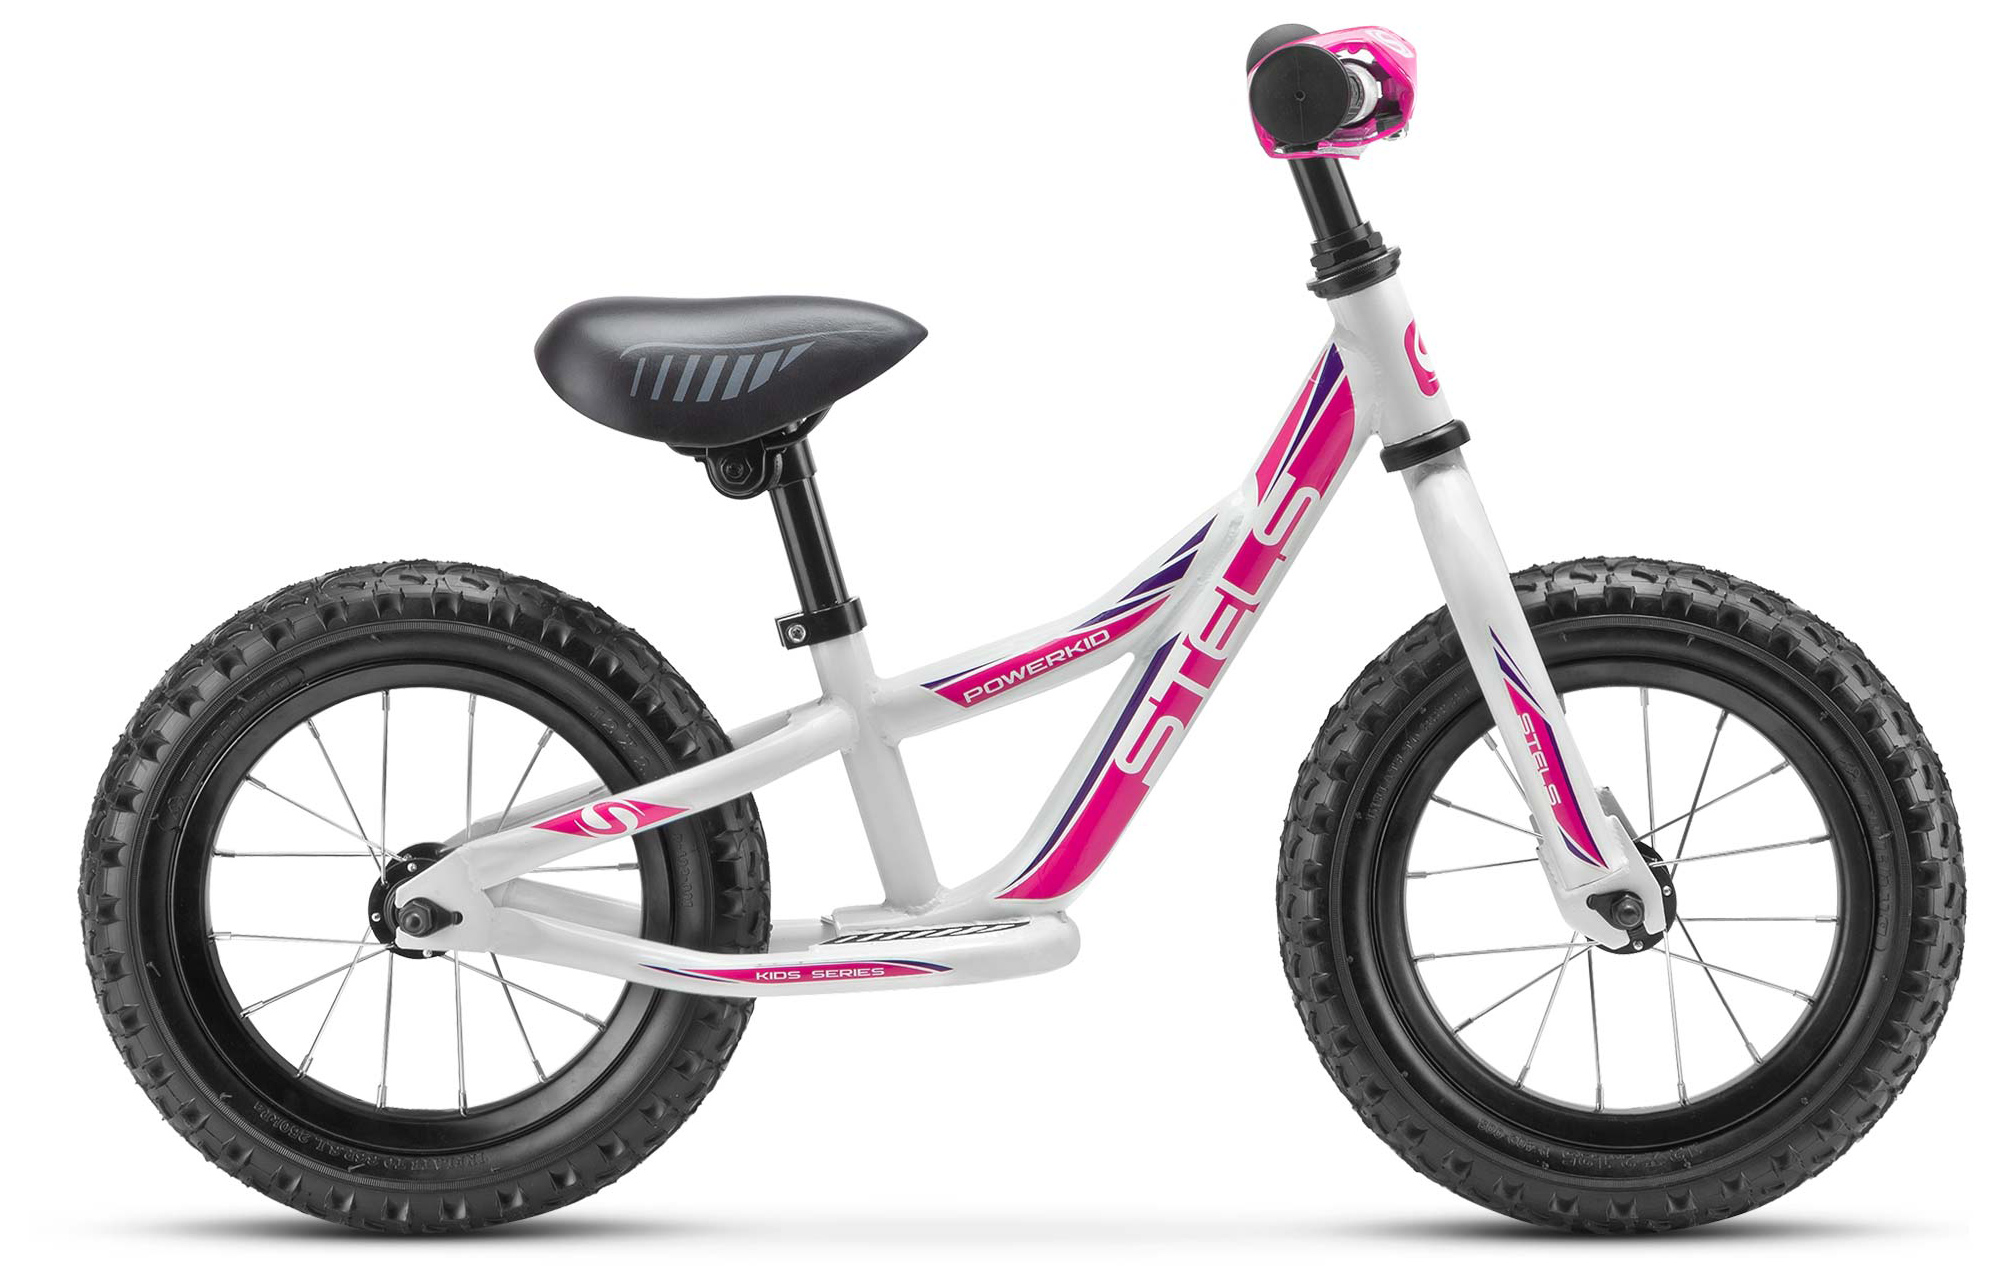  Отзывы о Детском велосипеде Stels Powerkid 12" Boy (V020) 2019